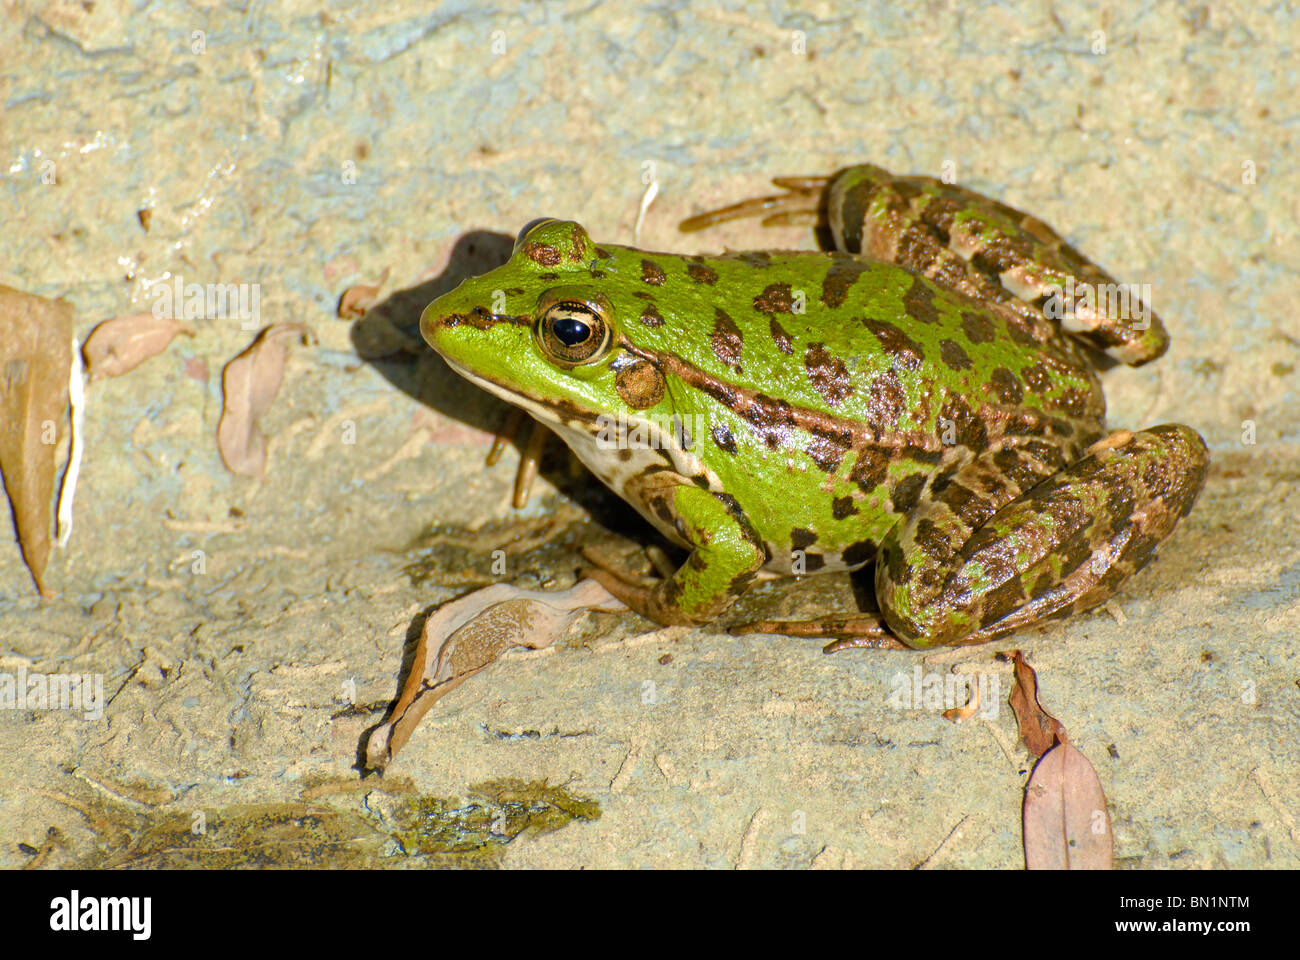 Rana sp, Frog Stock Photo